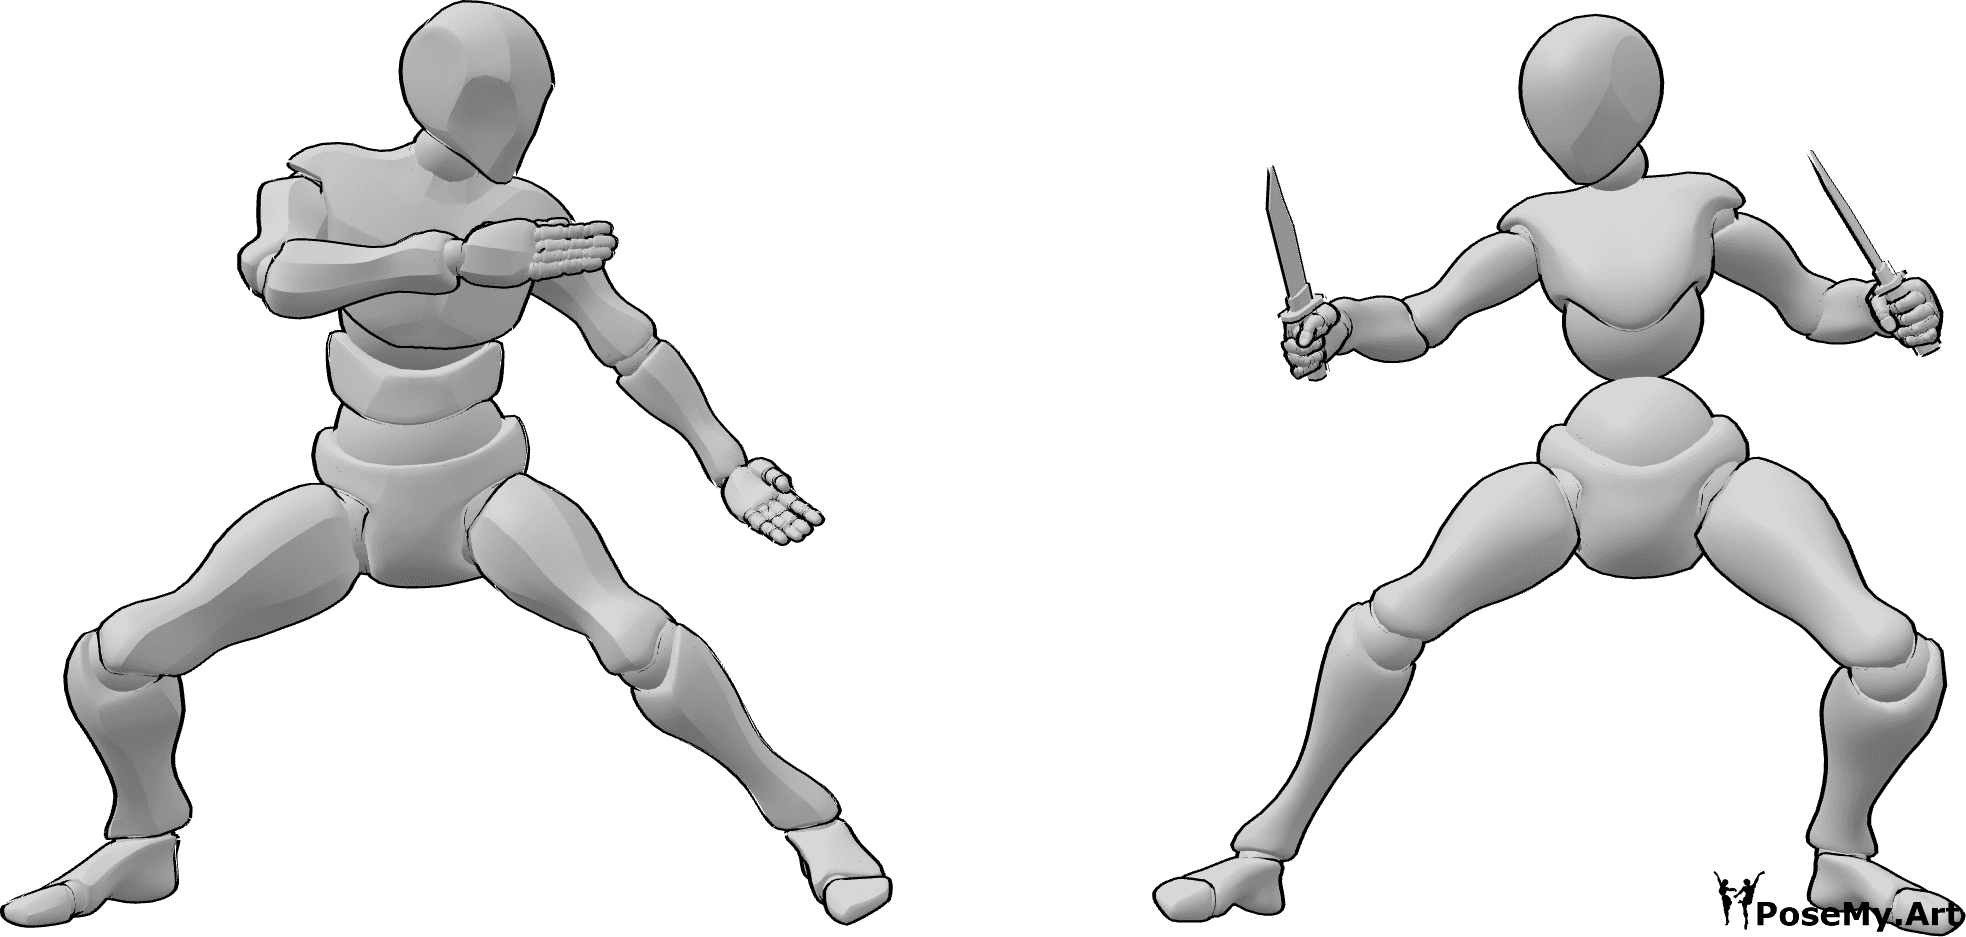 Referencia de poses- Postura de lucha con cuchillos - Hembra y macho están a punto de empezar a pelear, la hembra sostiene cuchillos